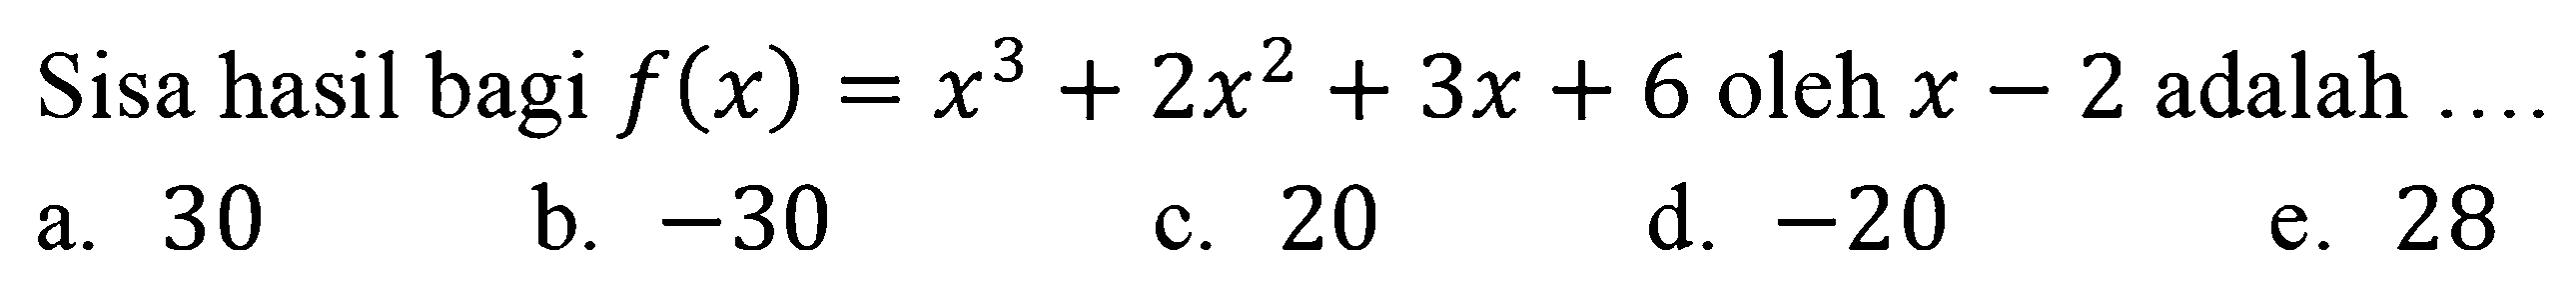 Sisa hasil bagi f(x)=x^3+2x^2+3x+6 oleh x-2 adalah ...